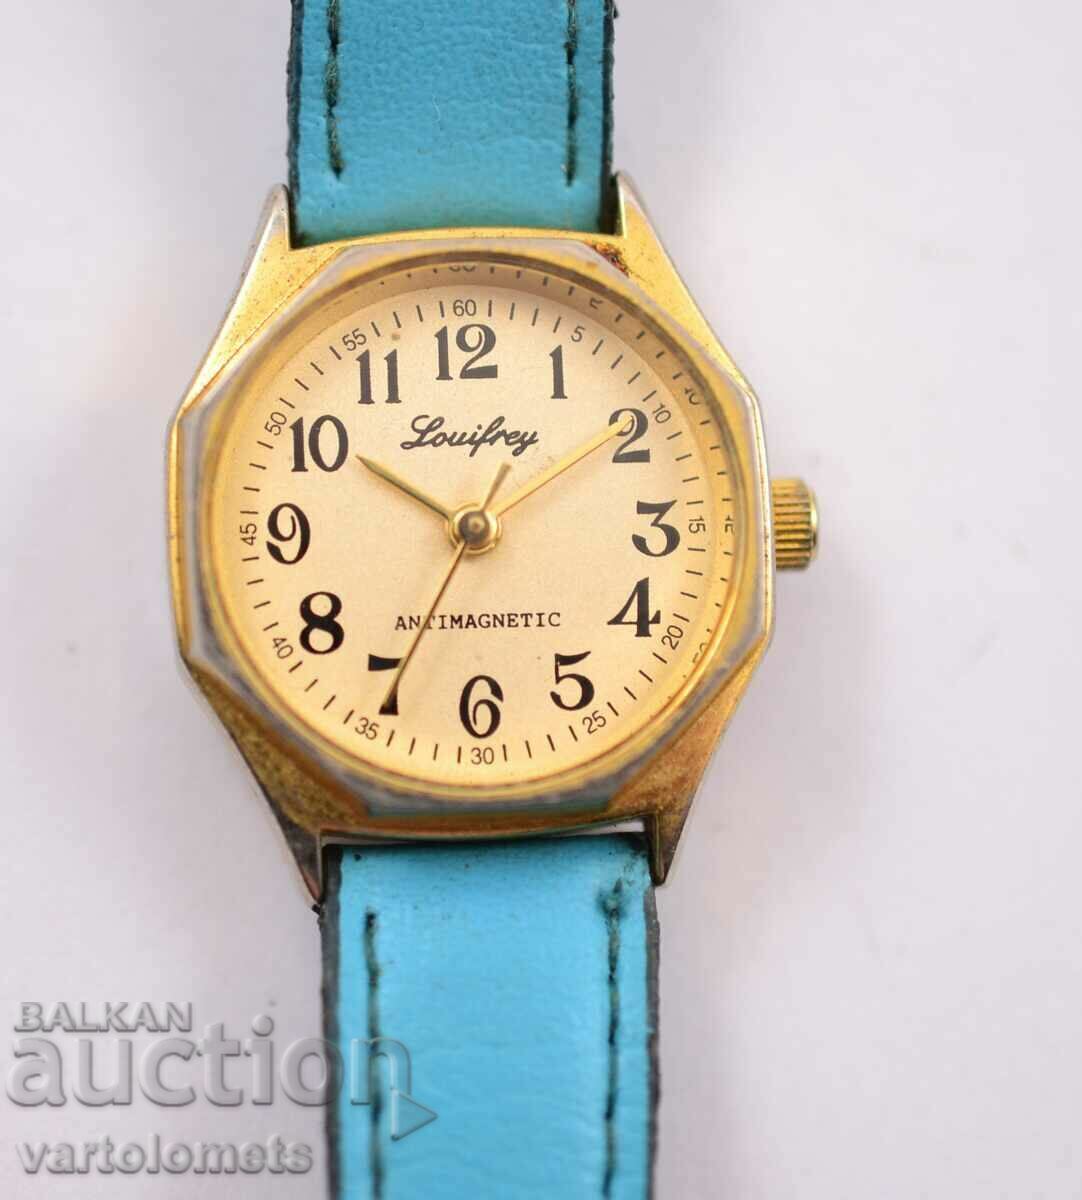 Γυναικείο επιχρυσωμένο ρολόι Louisfrey - Εργασία